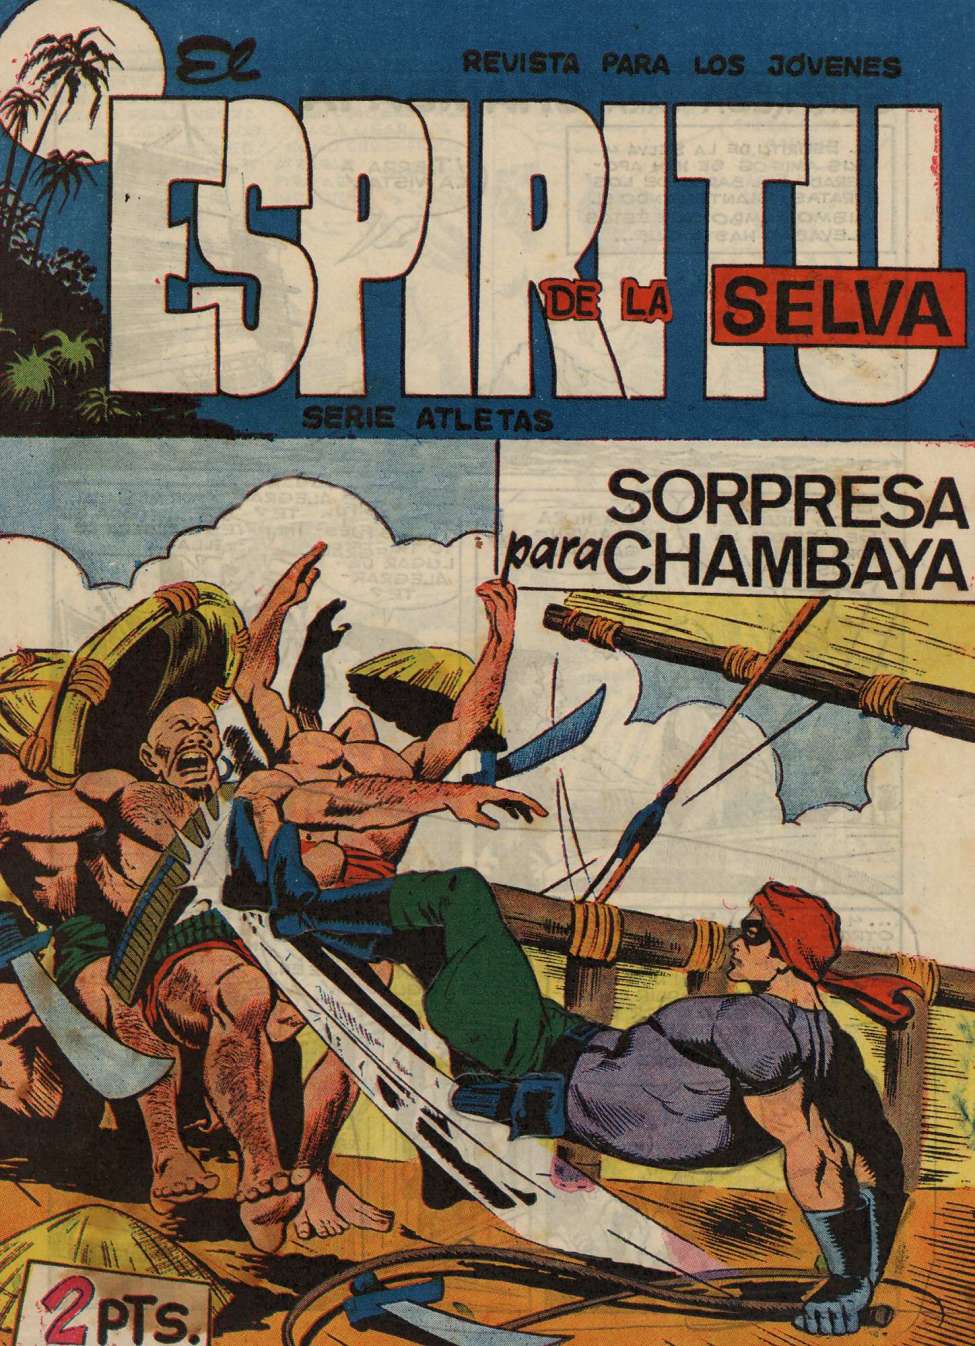 Comic Book Cover For El Espiritu De La Selva 72 - Sorpresa Para Chambaya